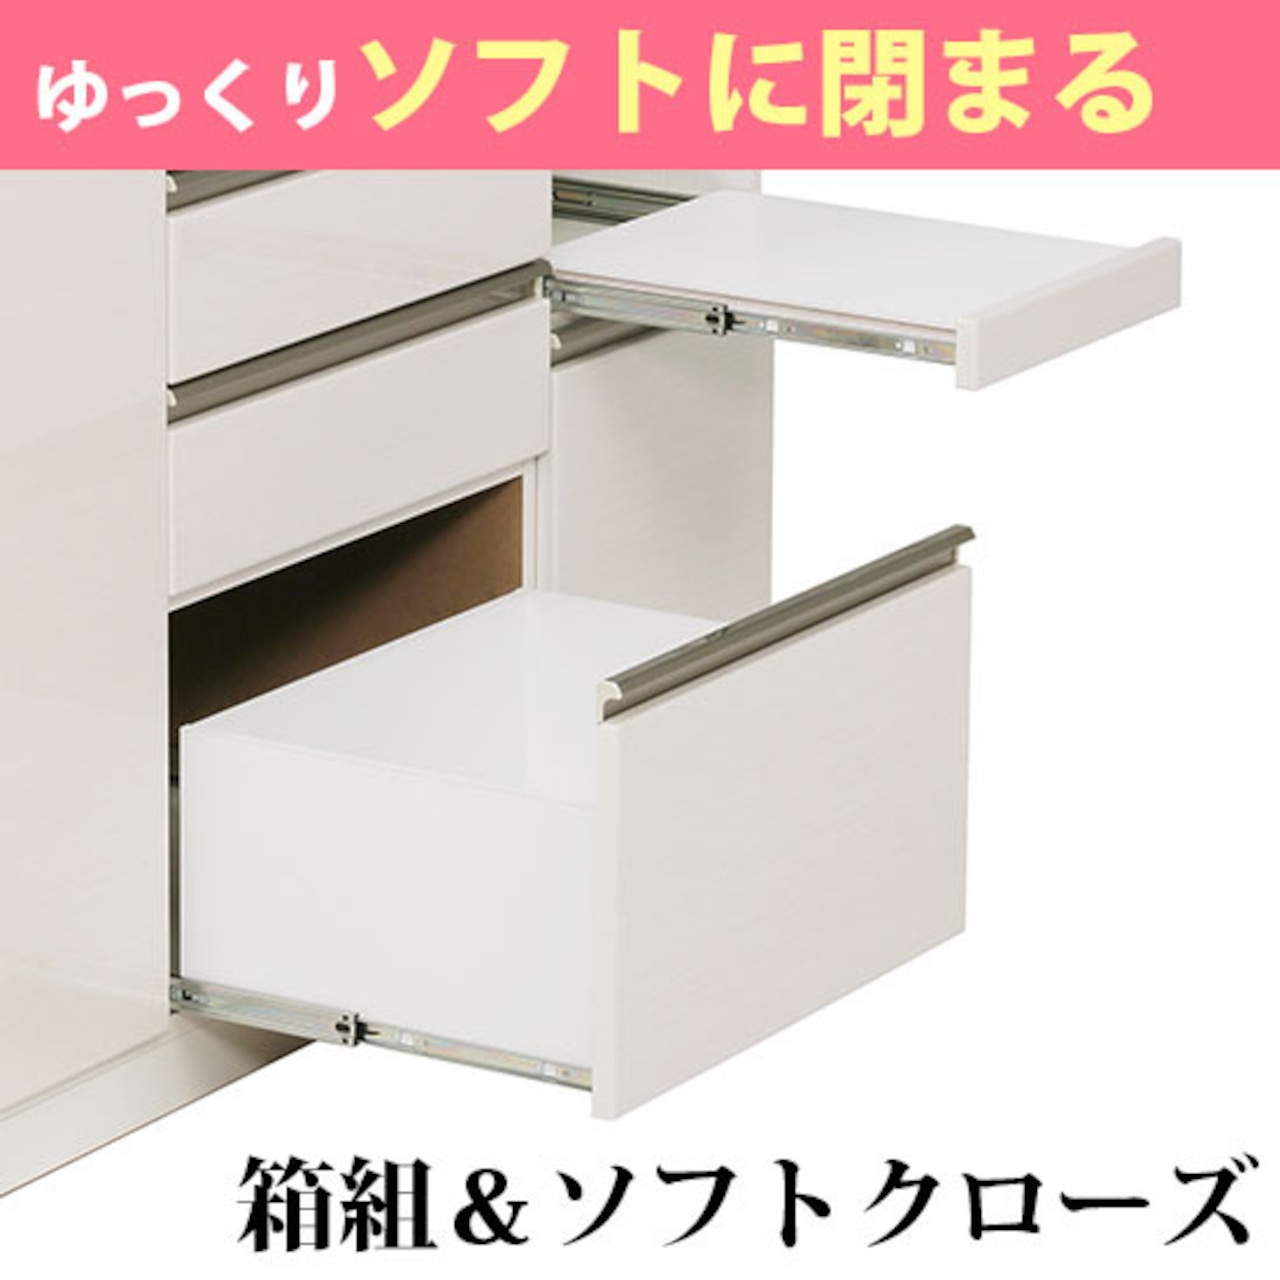 【幅100】キッチンボード 食器棚 レンジ台 収納 (全2色)